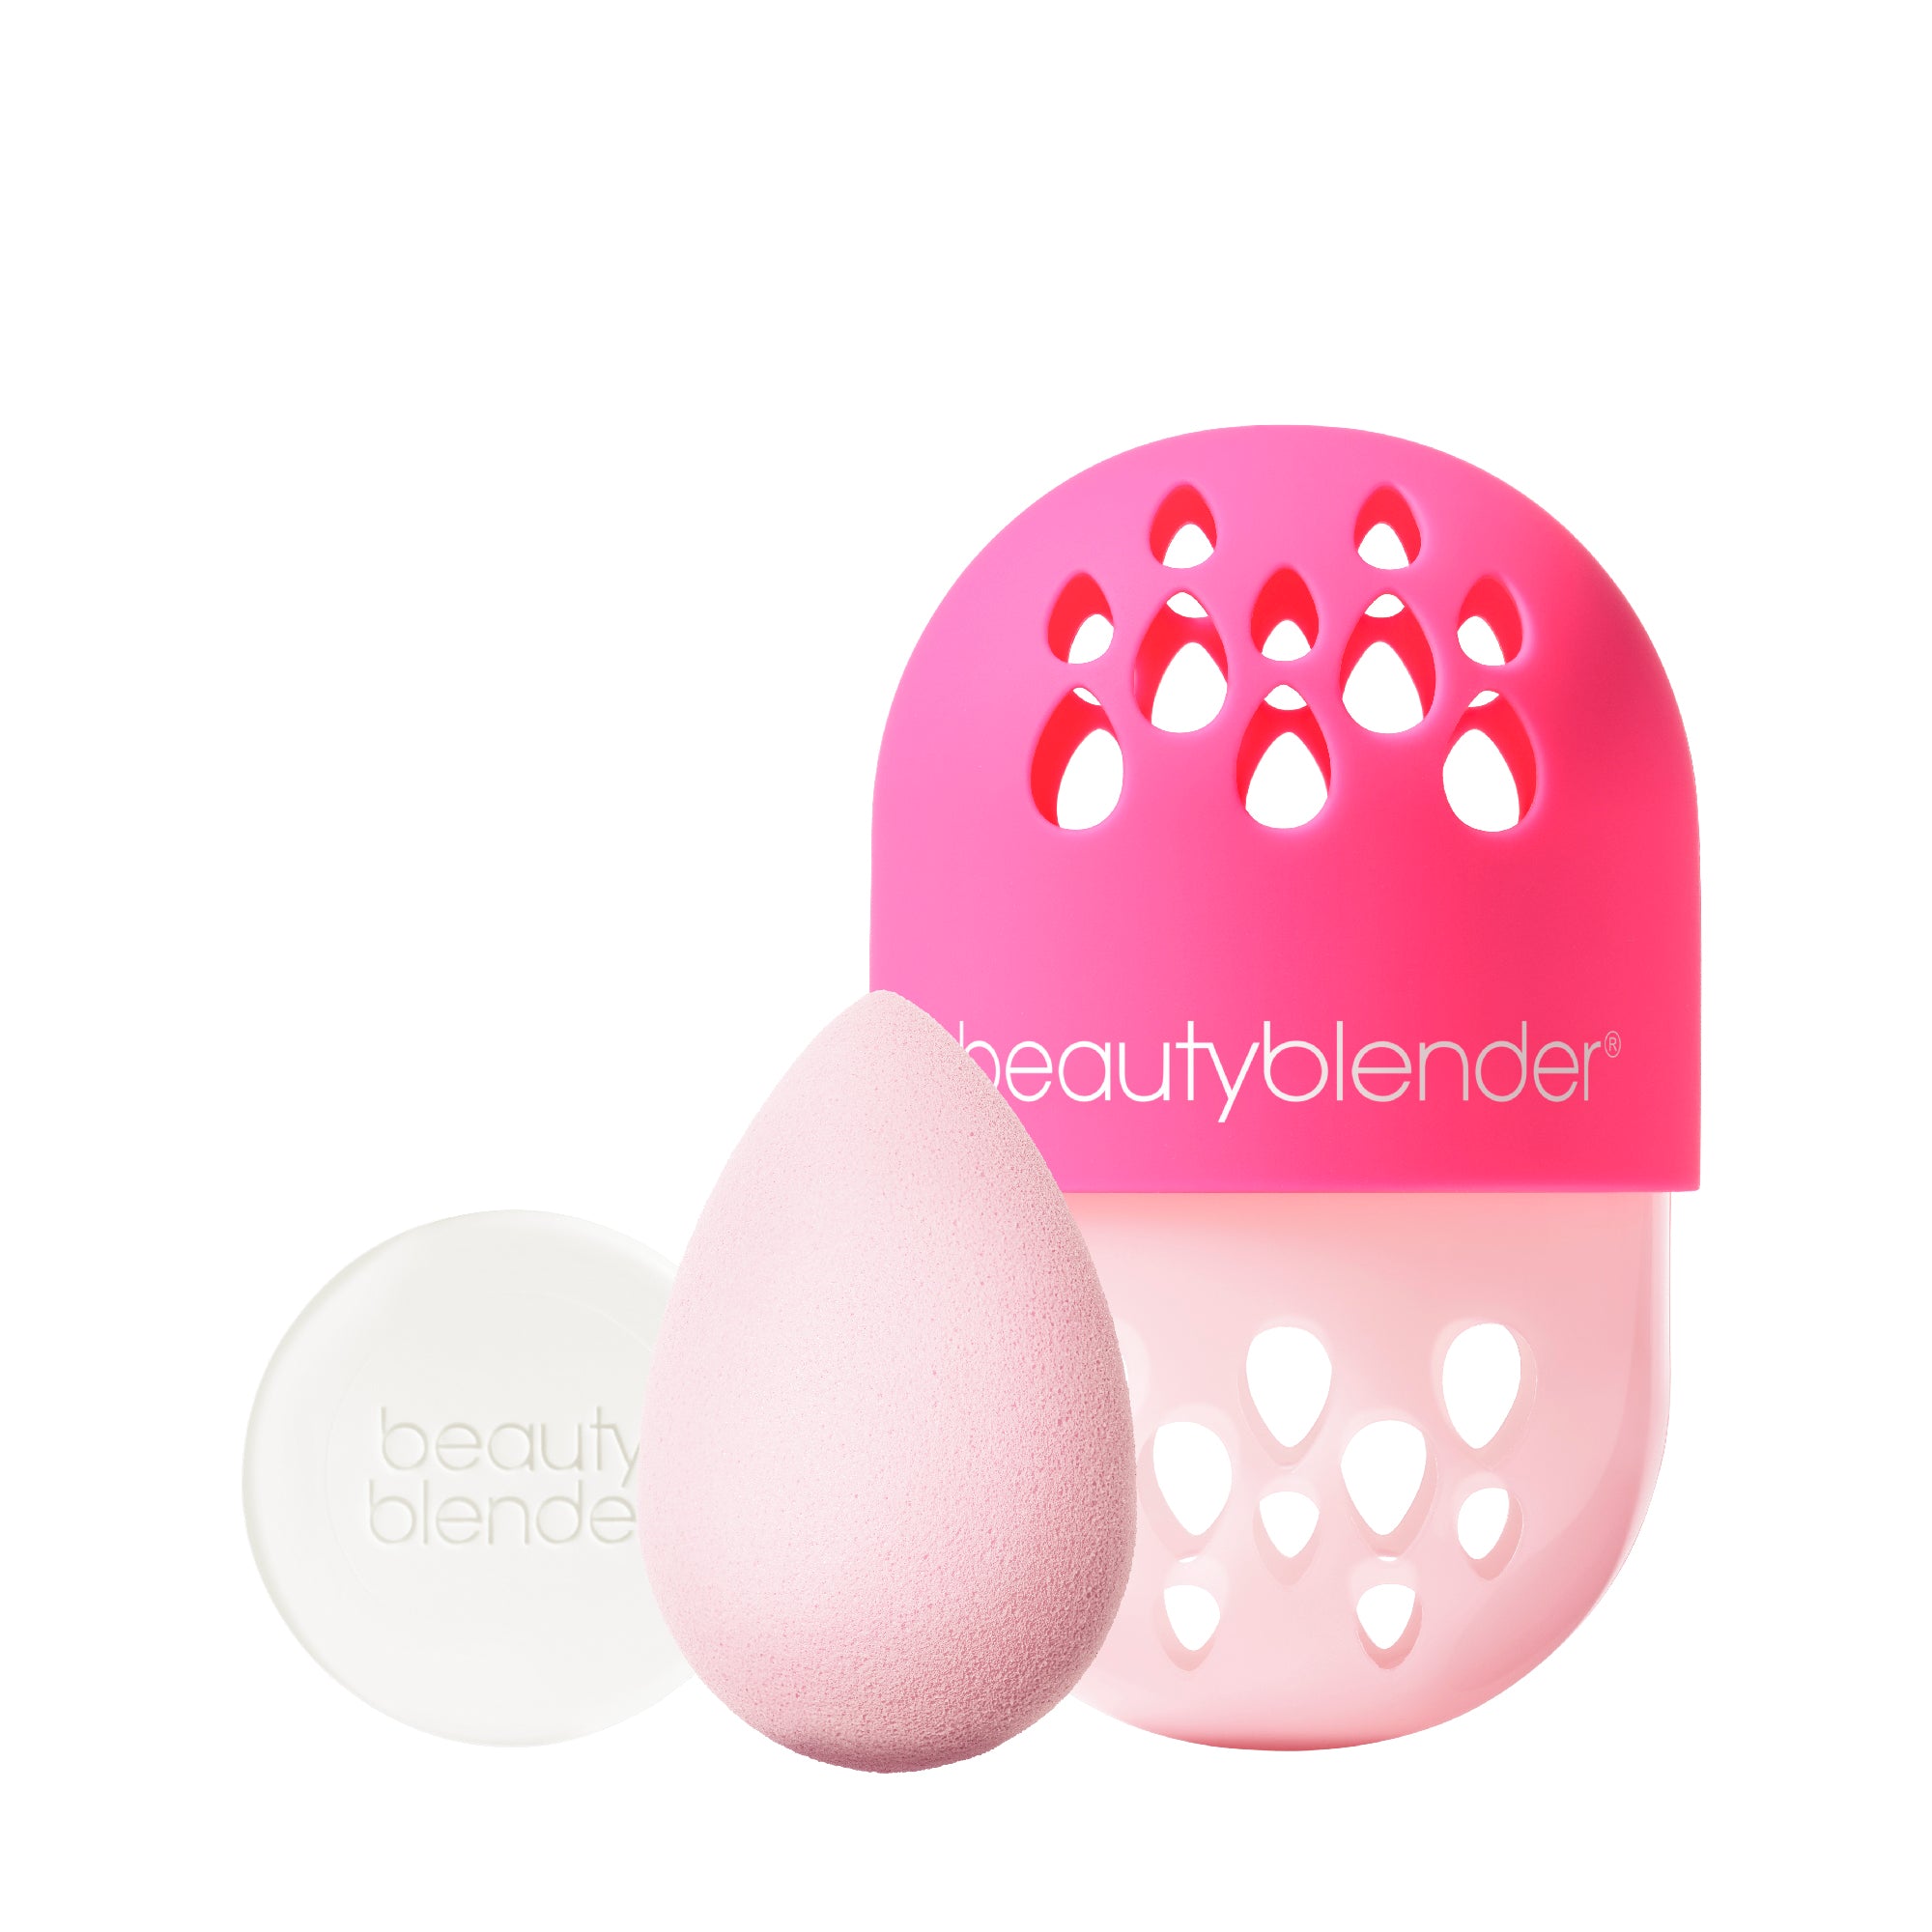 Beautyblender - All Stars Power Pink Starter Set image 1